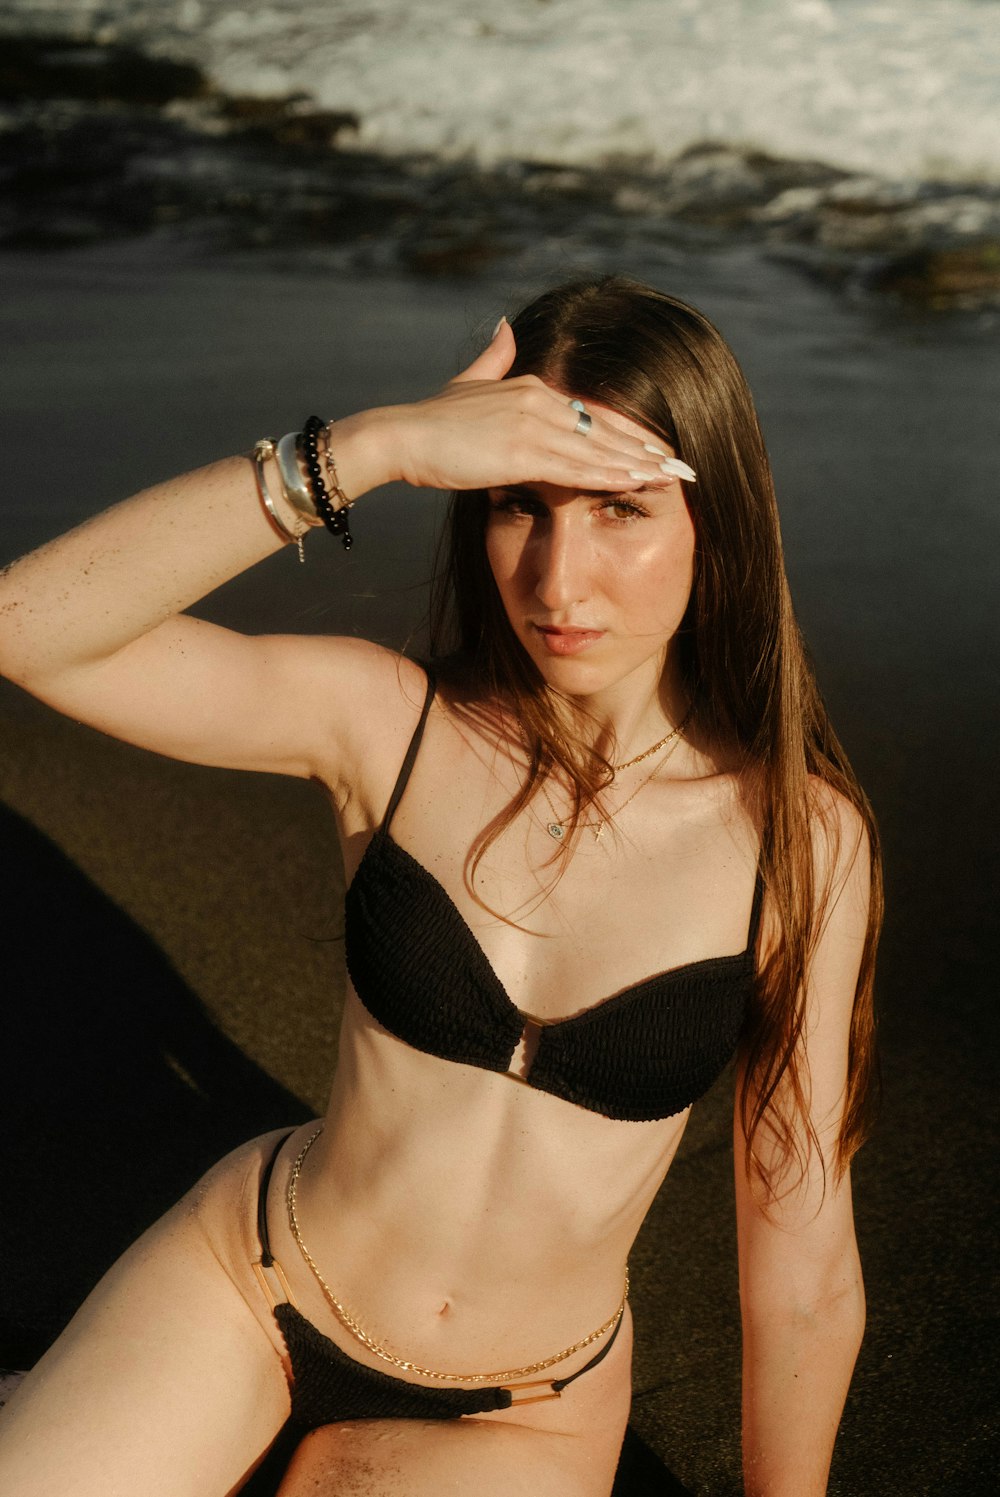 a woman in a bikini sitting on the beach